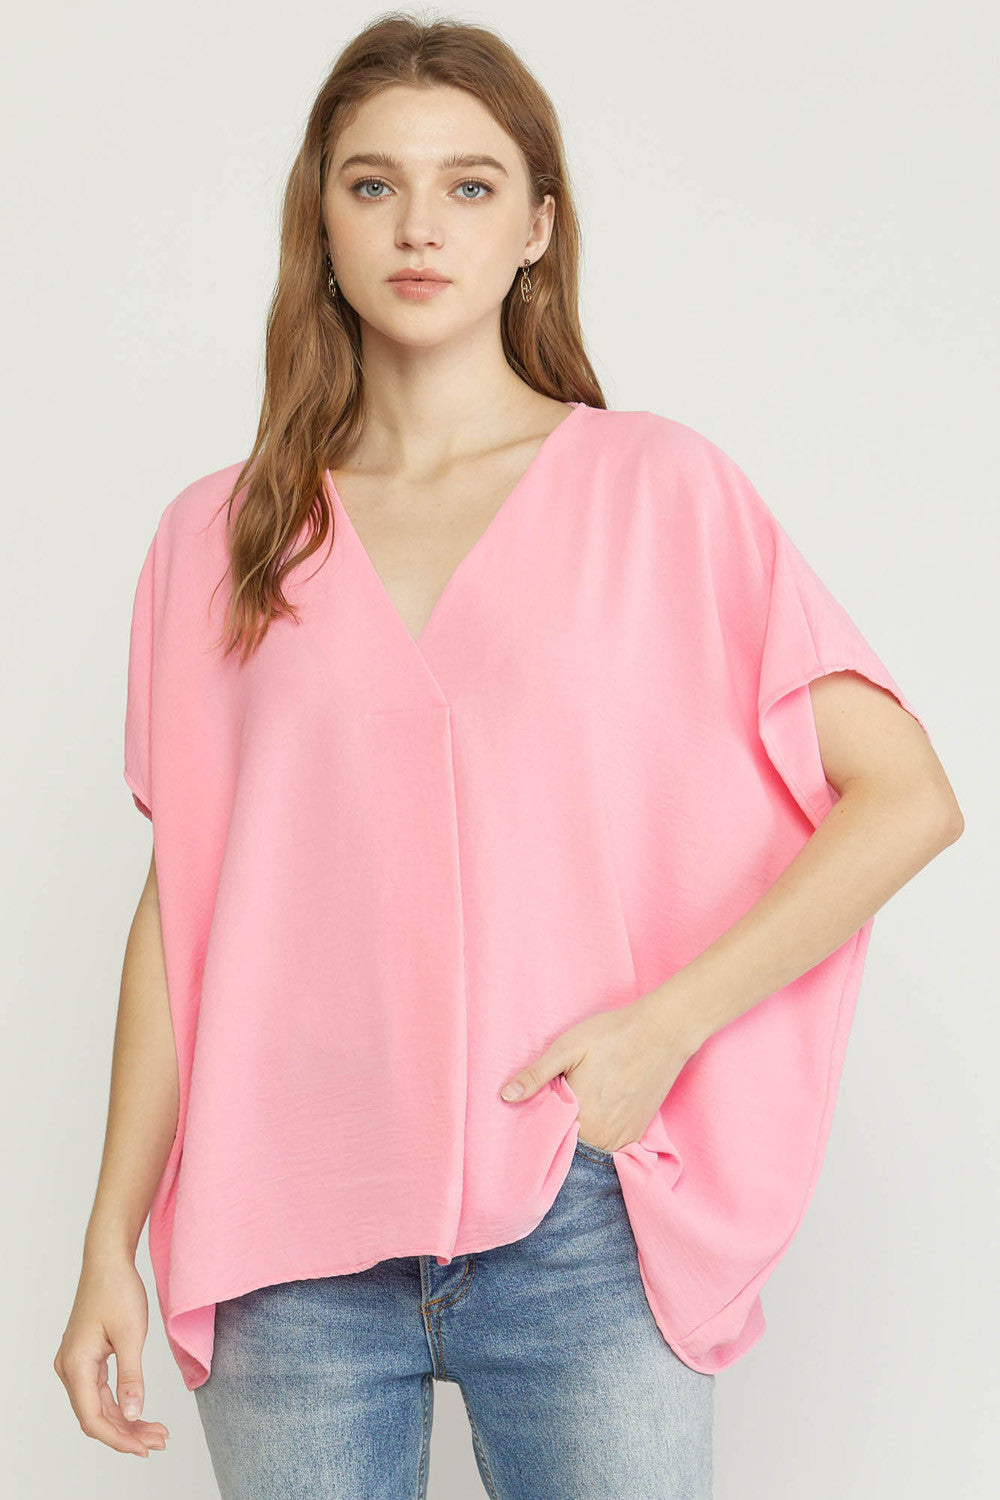 V-Neck Short Sleeve Top - Baby Pink-K. Ellis Boutique